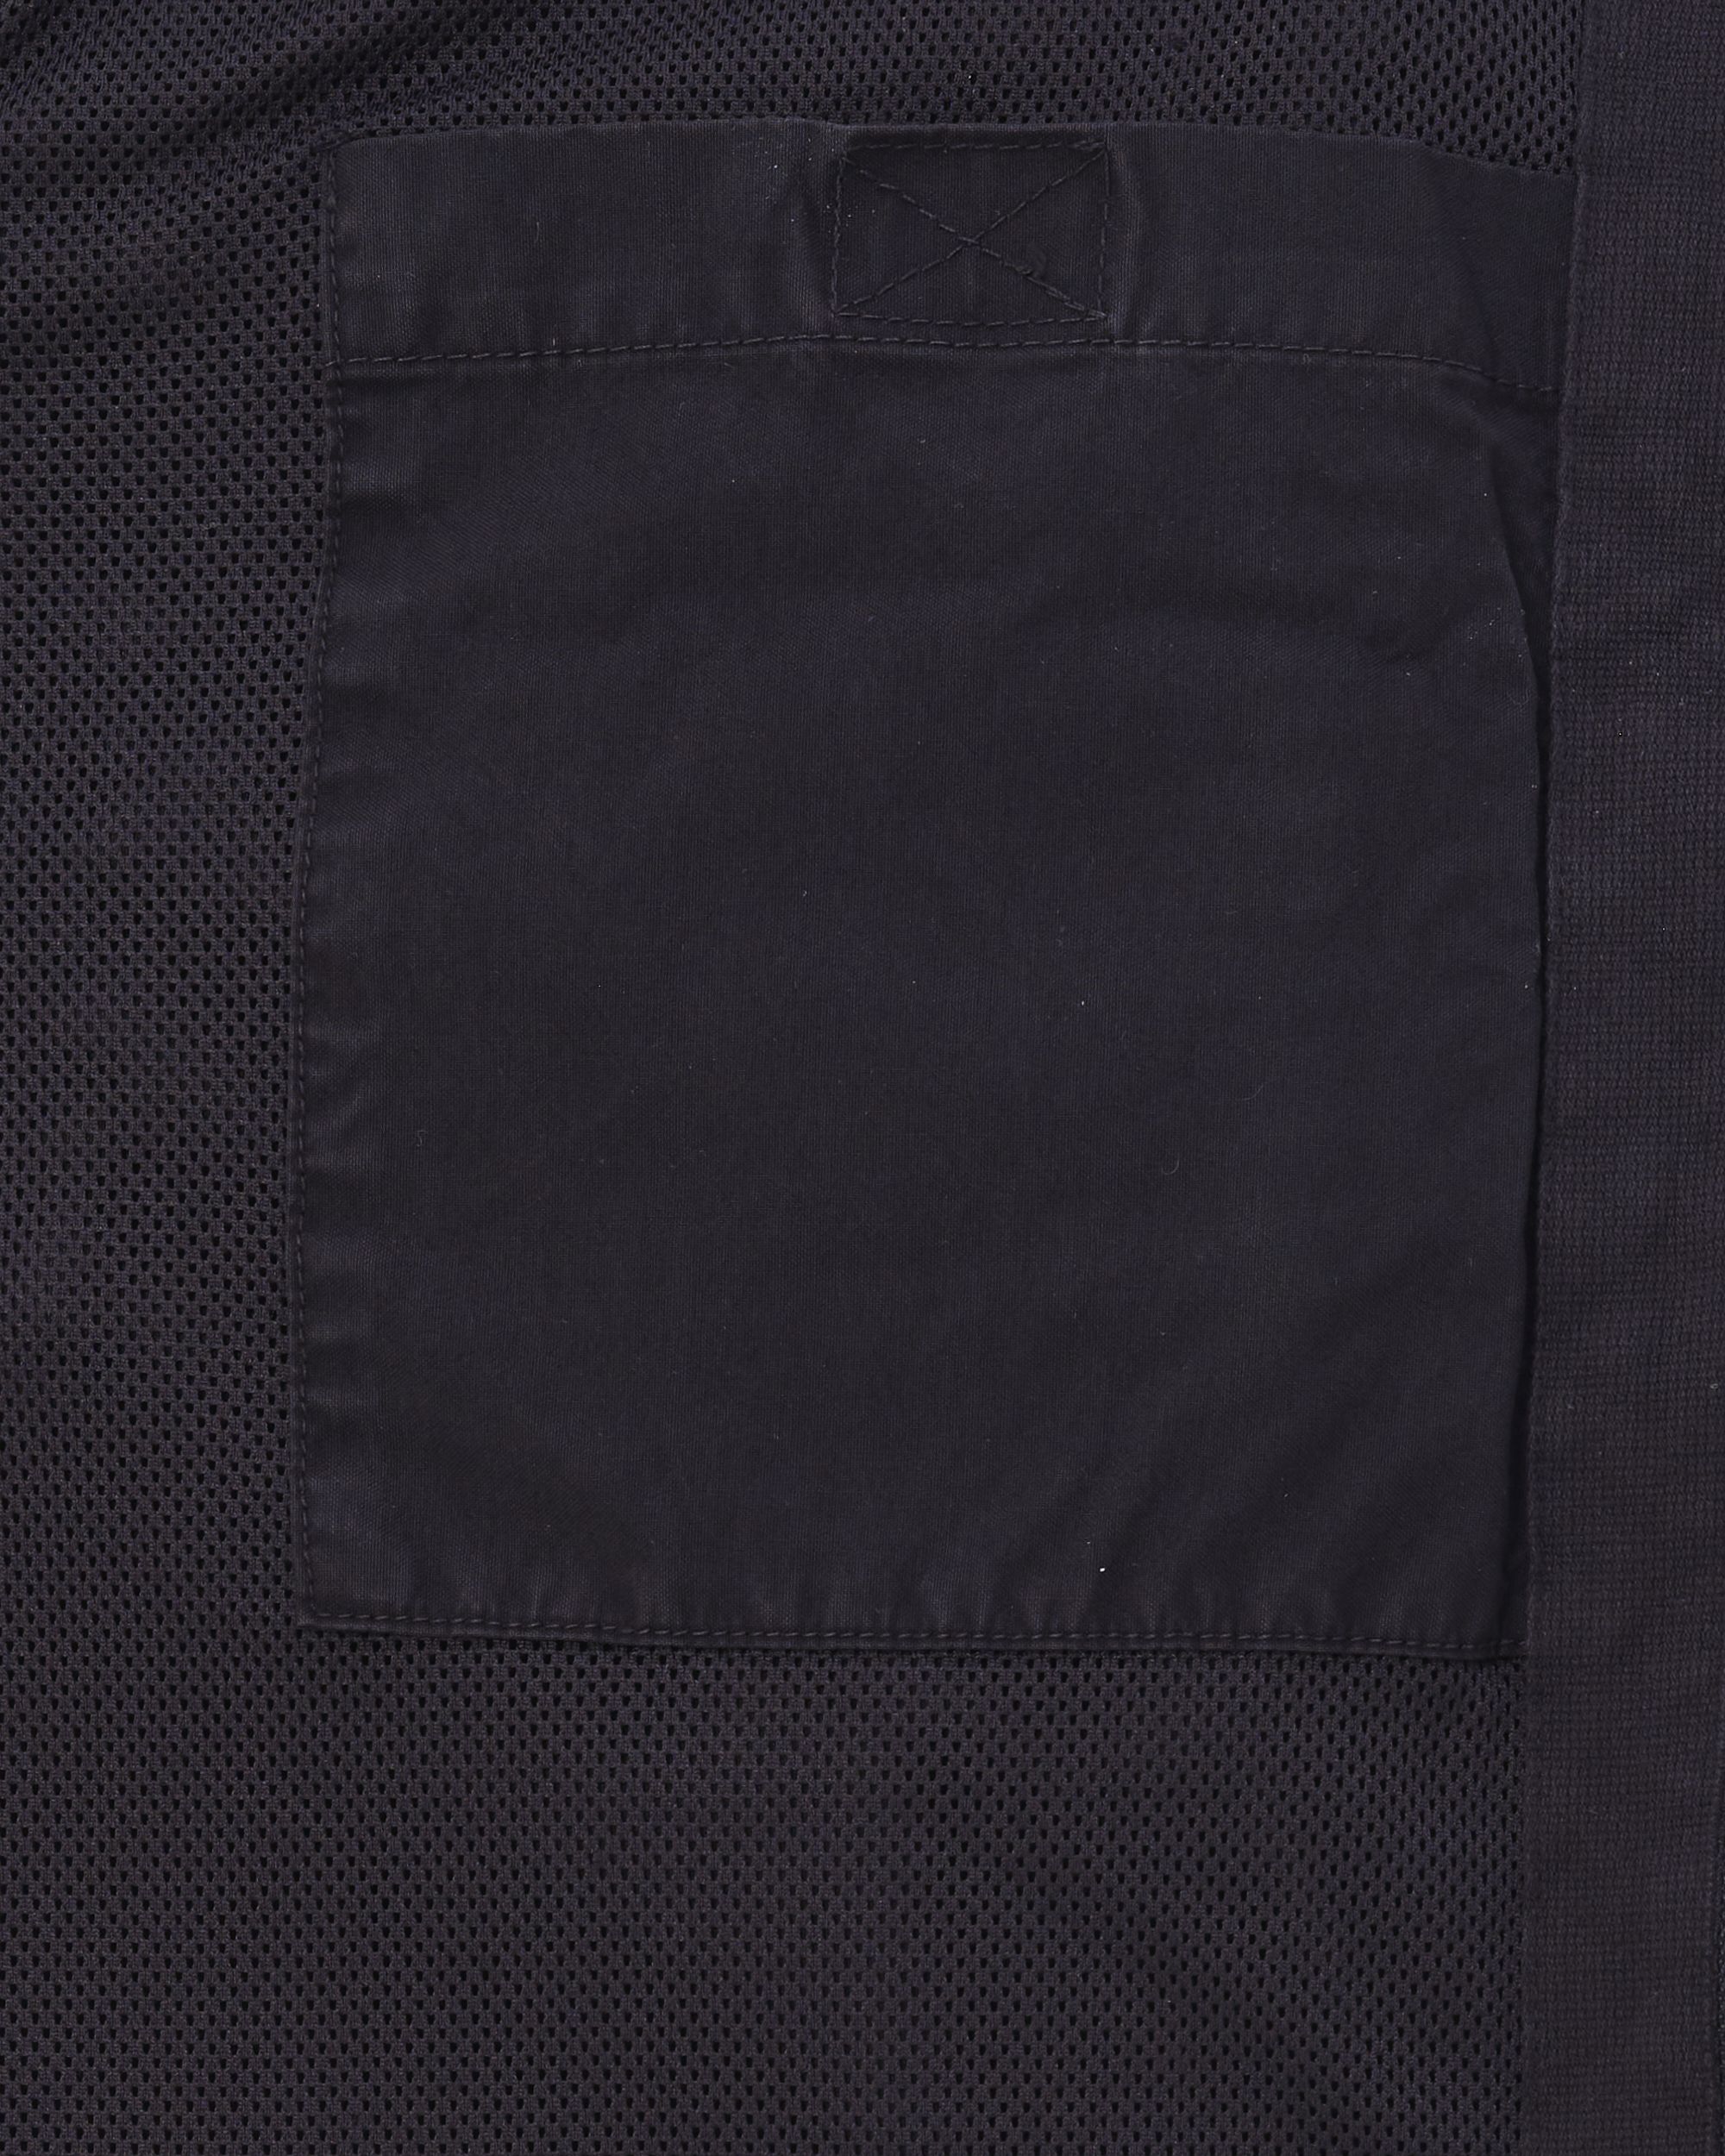 J.C. RAGS Reve Overshirt Black 084721-003-L